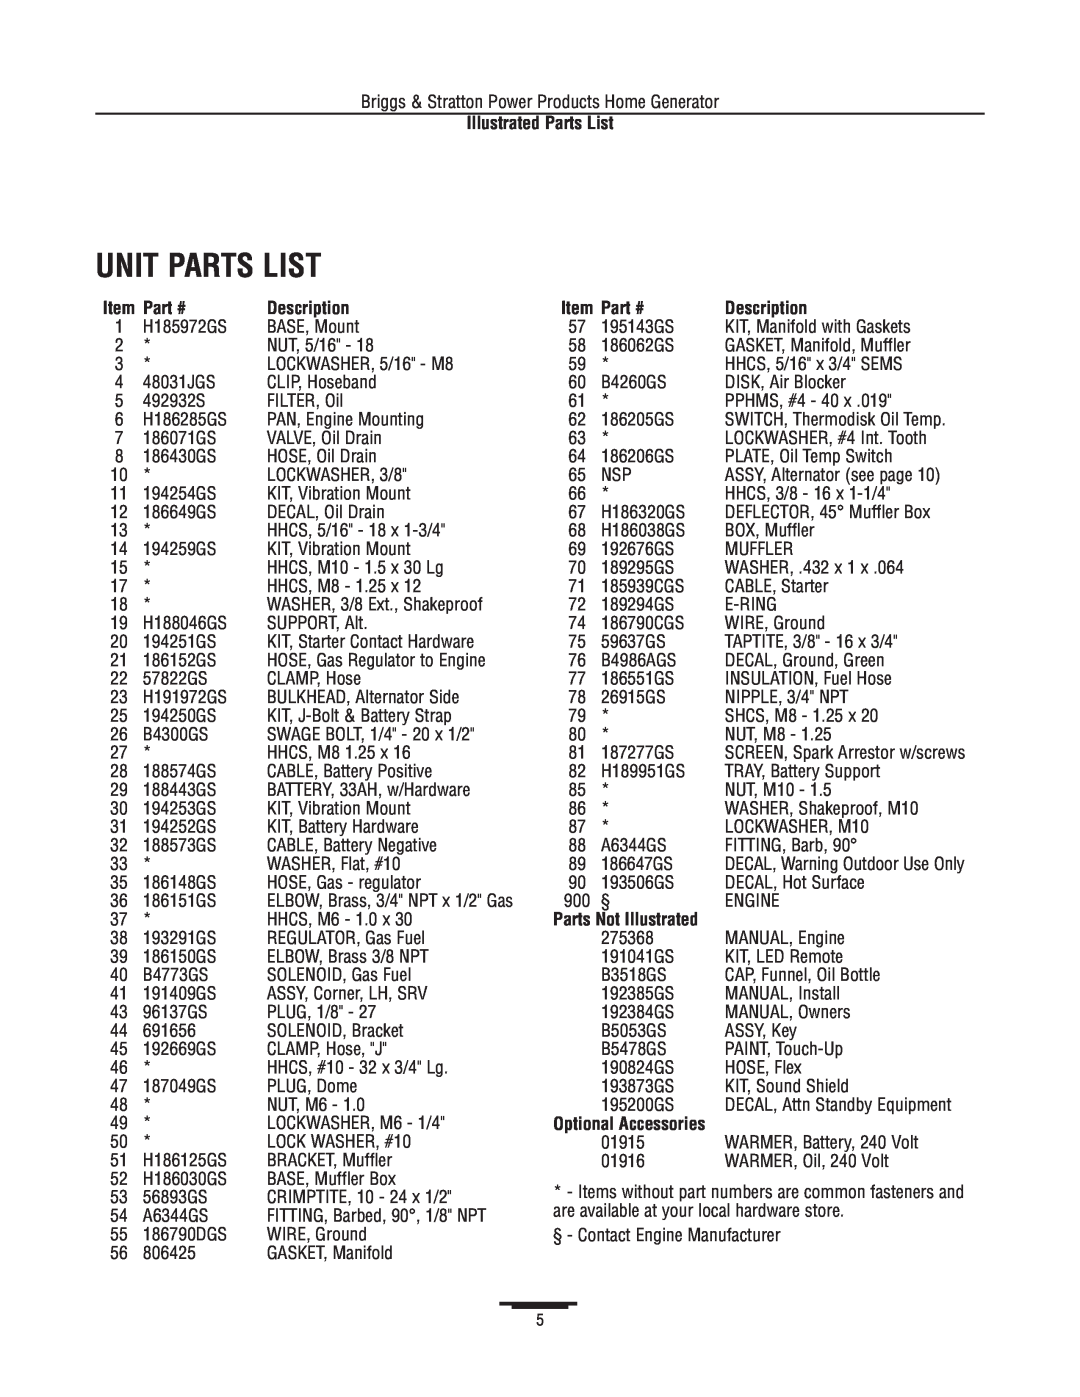 Briggs & Stratton 1815 manual Unit Parts List, Part #, Description, Parts Not Illustrated, Illustrated Parts List 